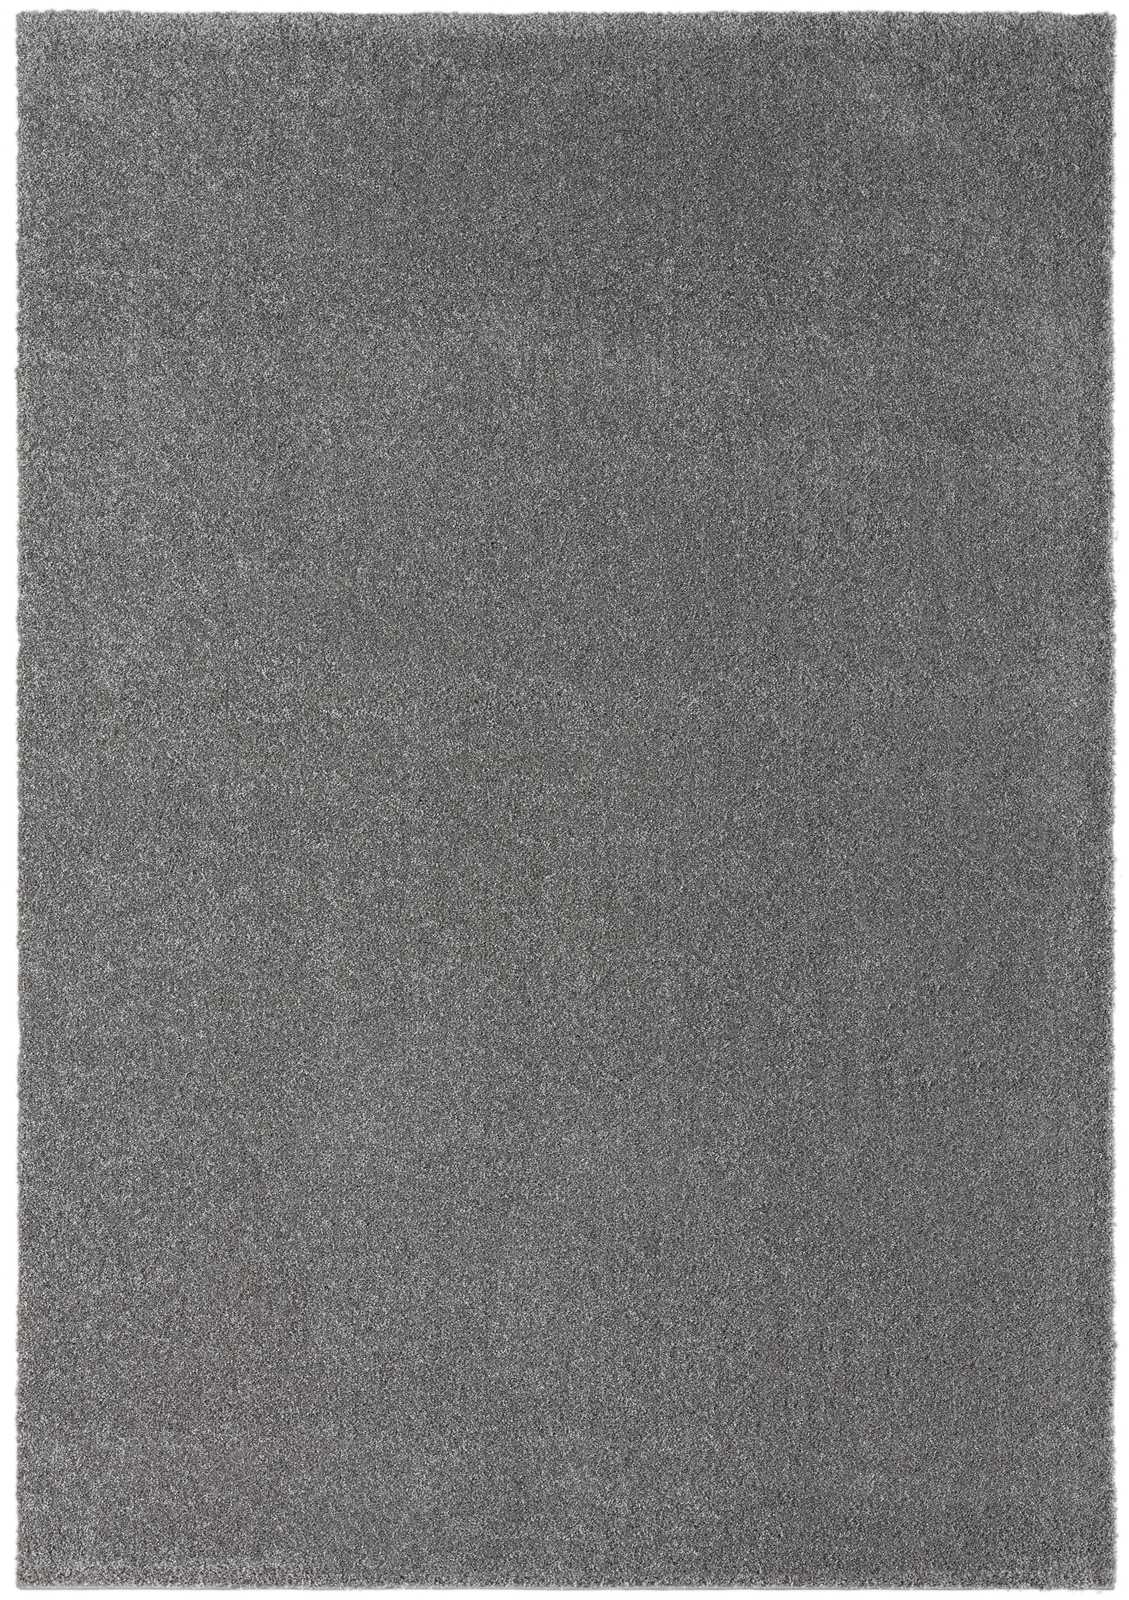             Pluizig kortpolig tapijt in grijs - 200 x 140 cm
        